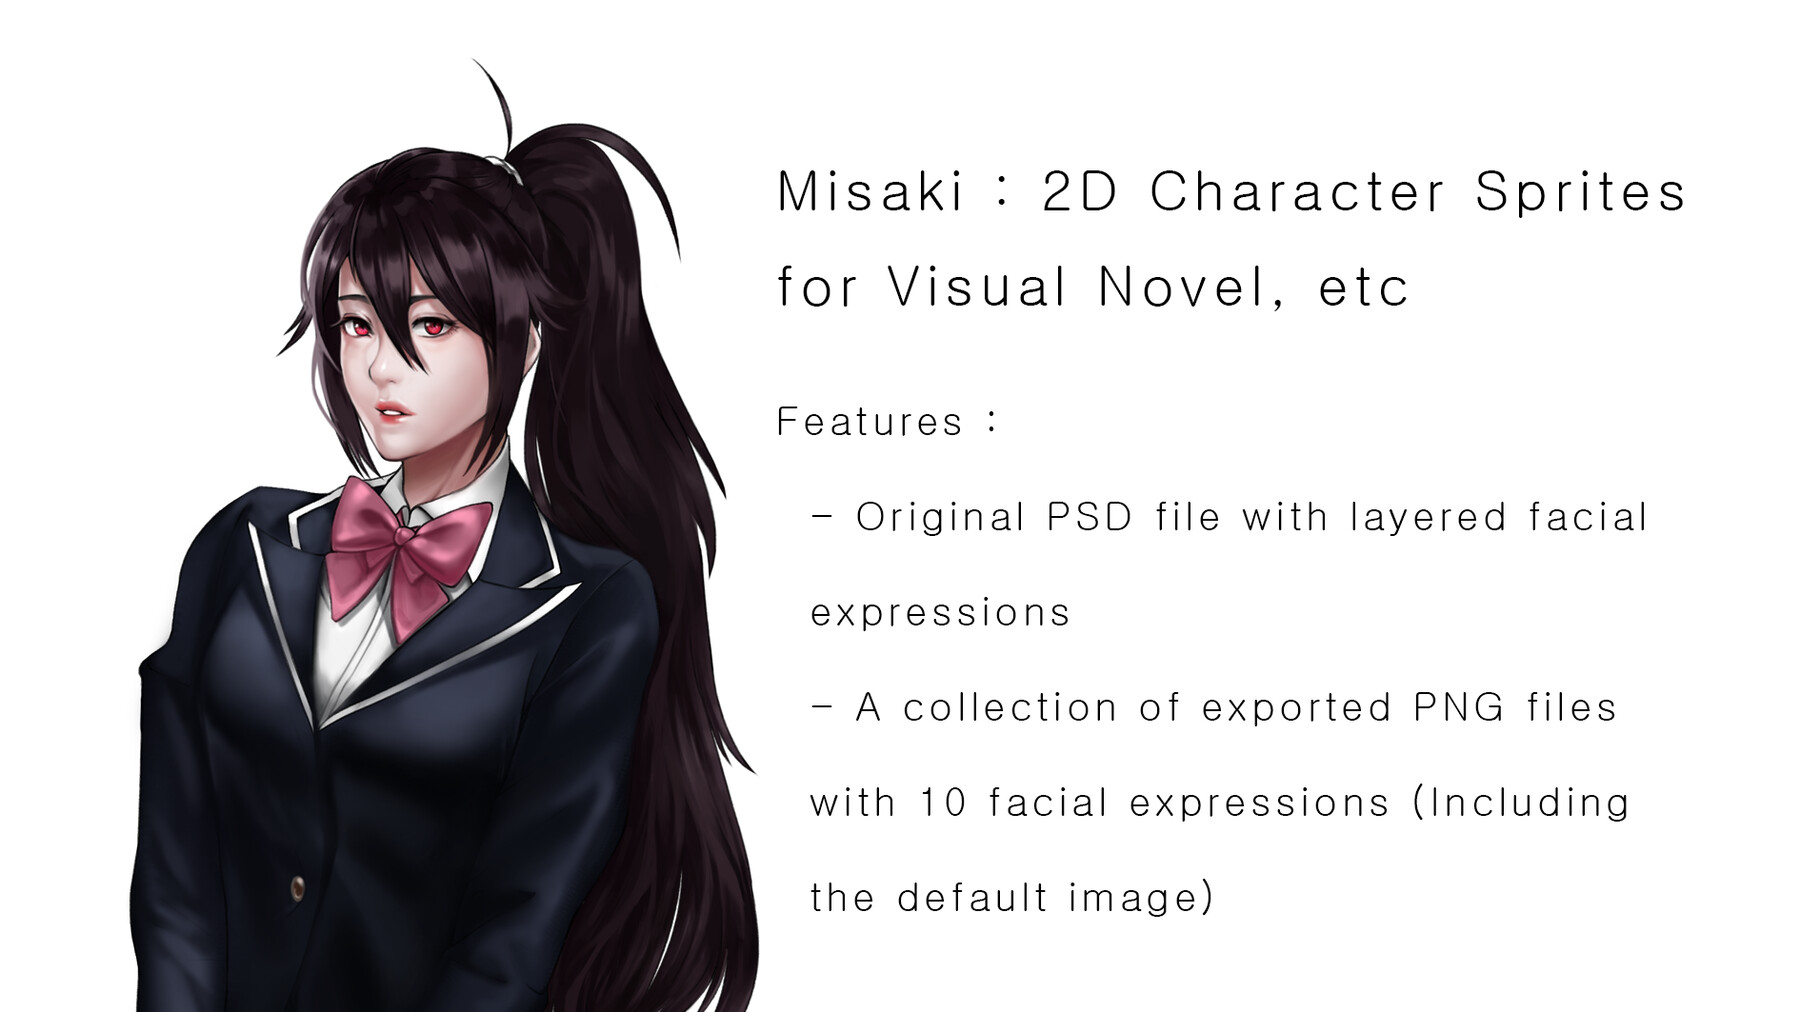 ArtStation - Anime Girl Character Design for Visual Novel